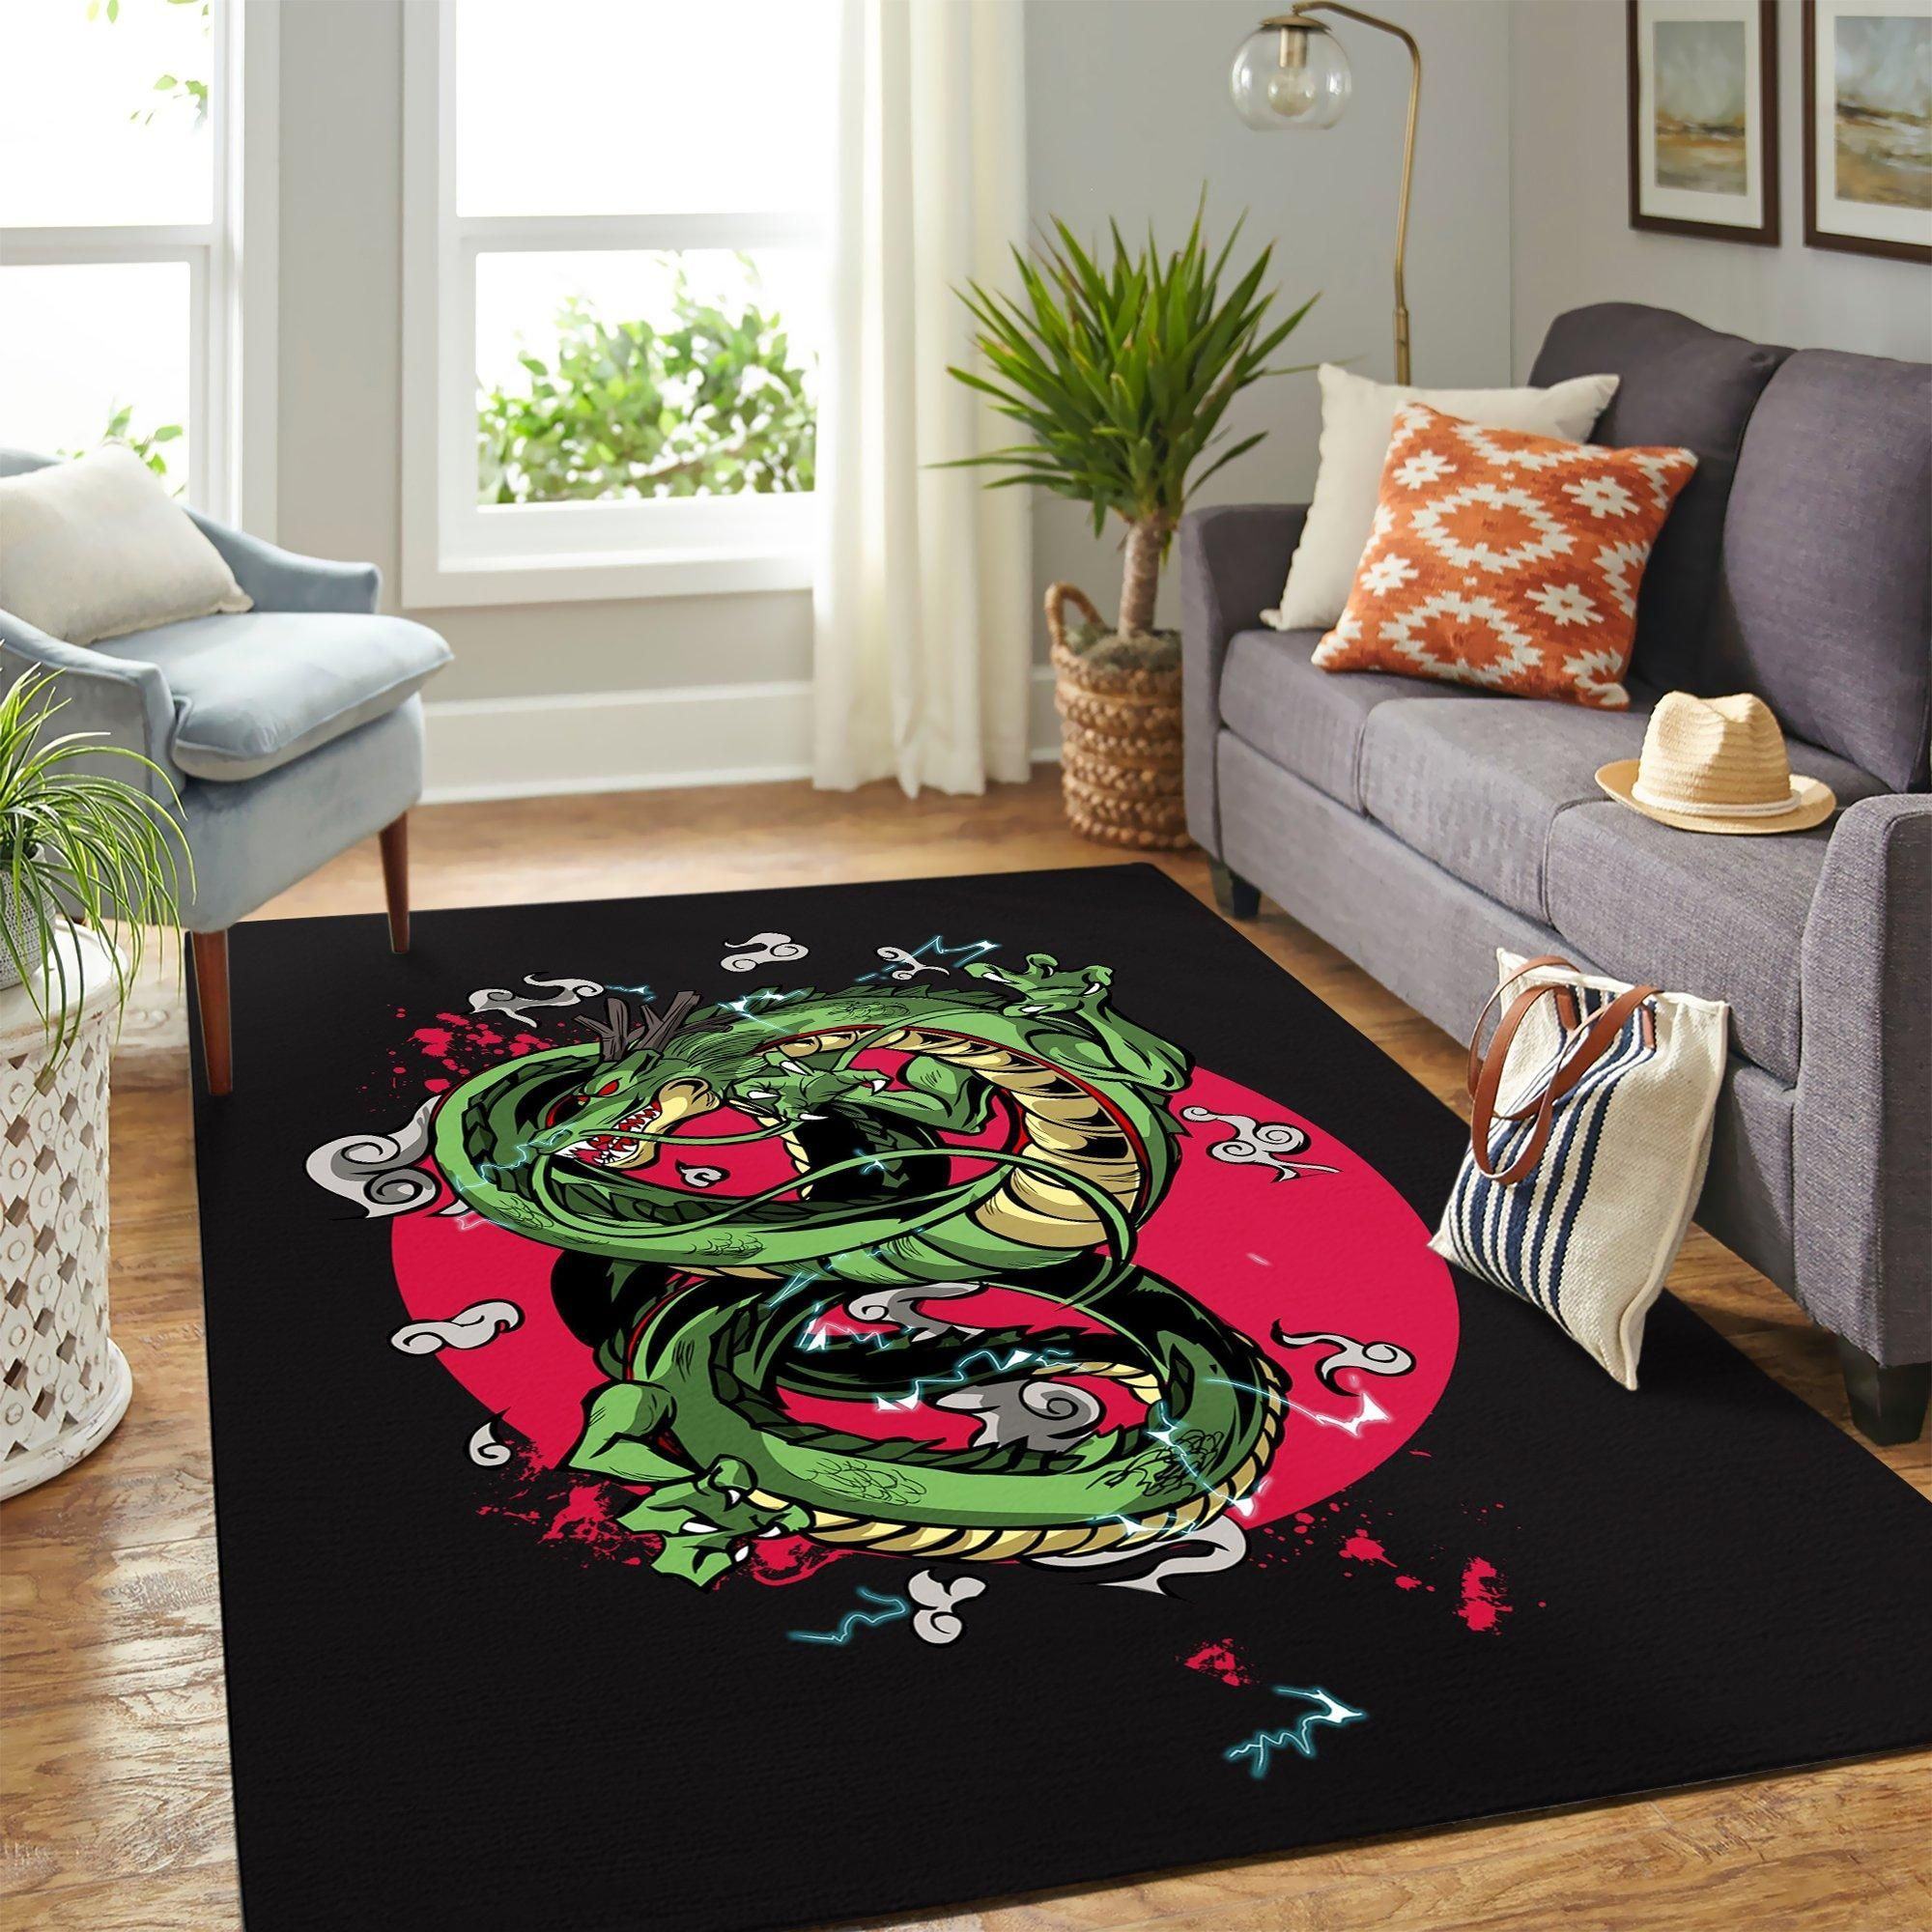 shenron dragon ball teppich wohnzimmer kchenteppich teppichboden carpet